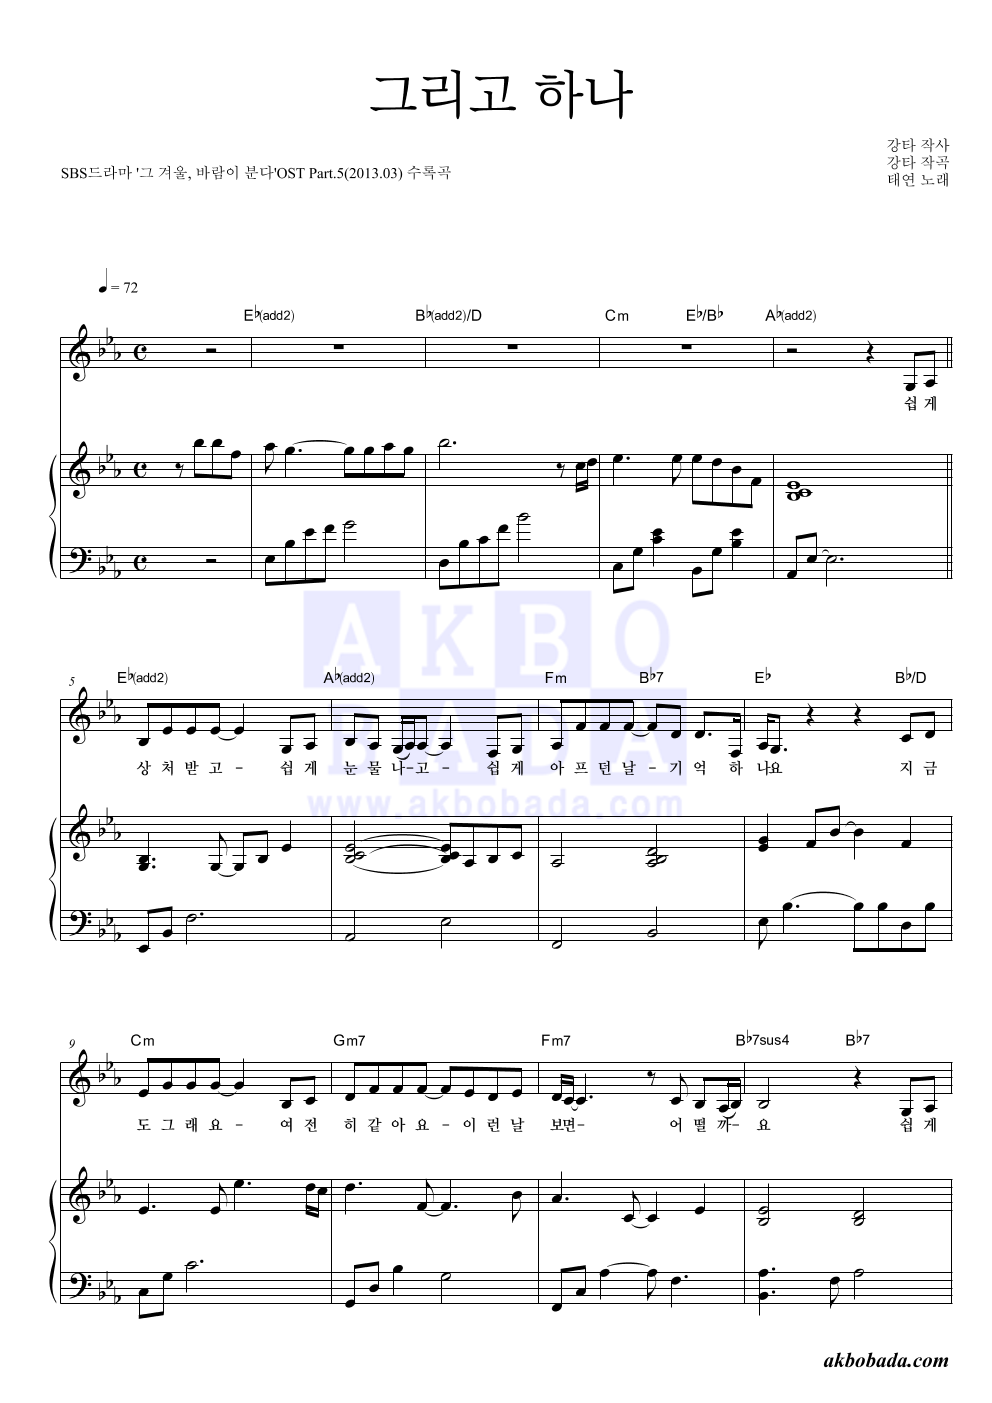 태연 - 그리고 하나 피아노 3단 악보 